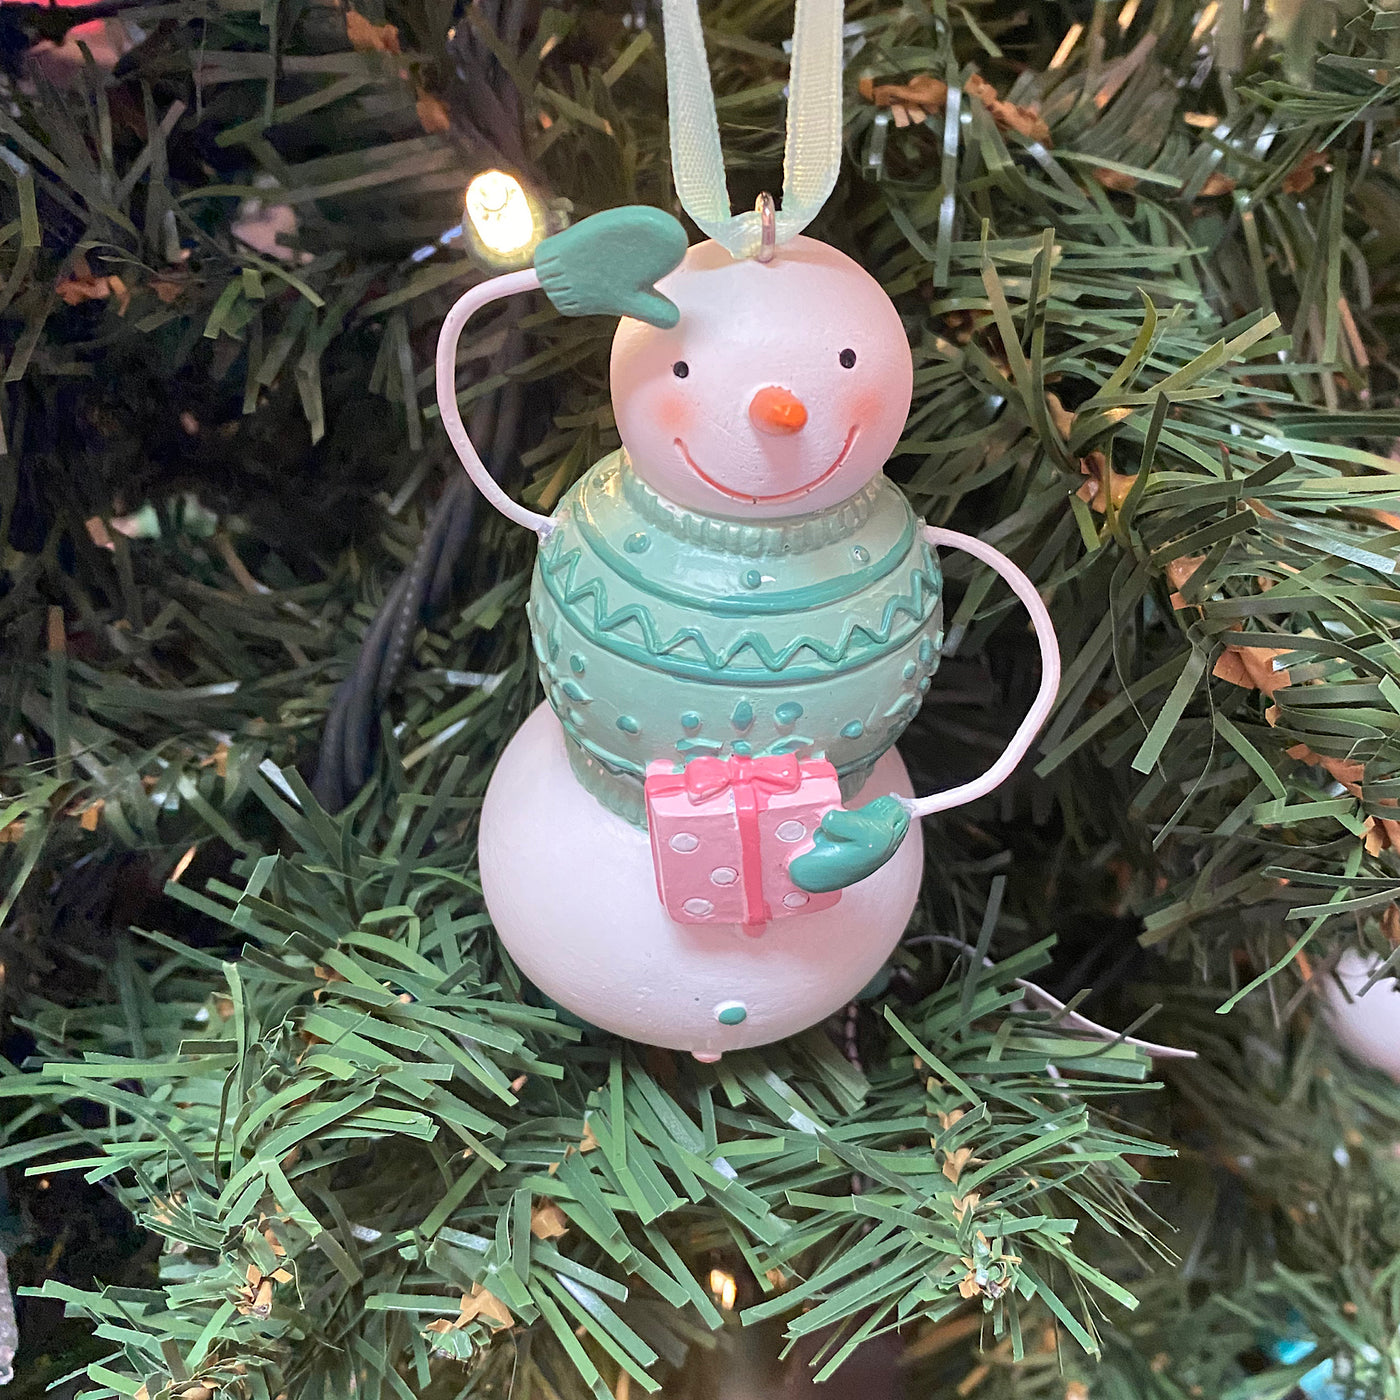 Playful Snowman Tree Ornaments